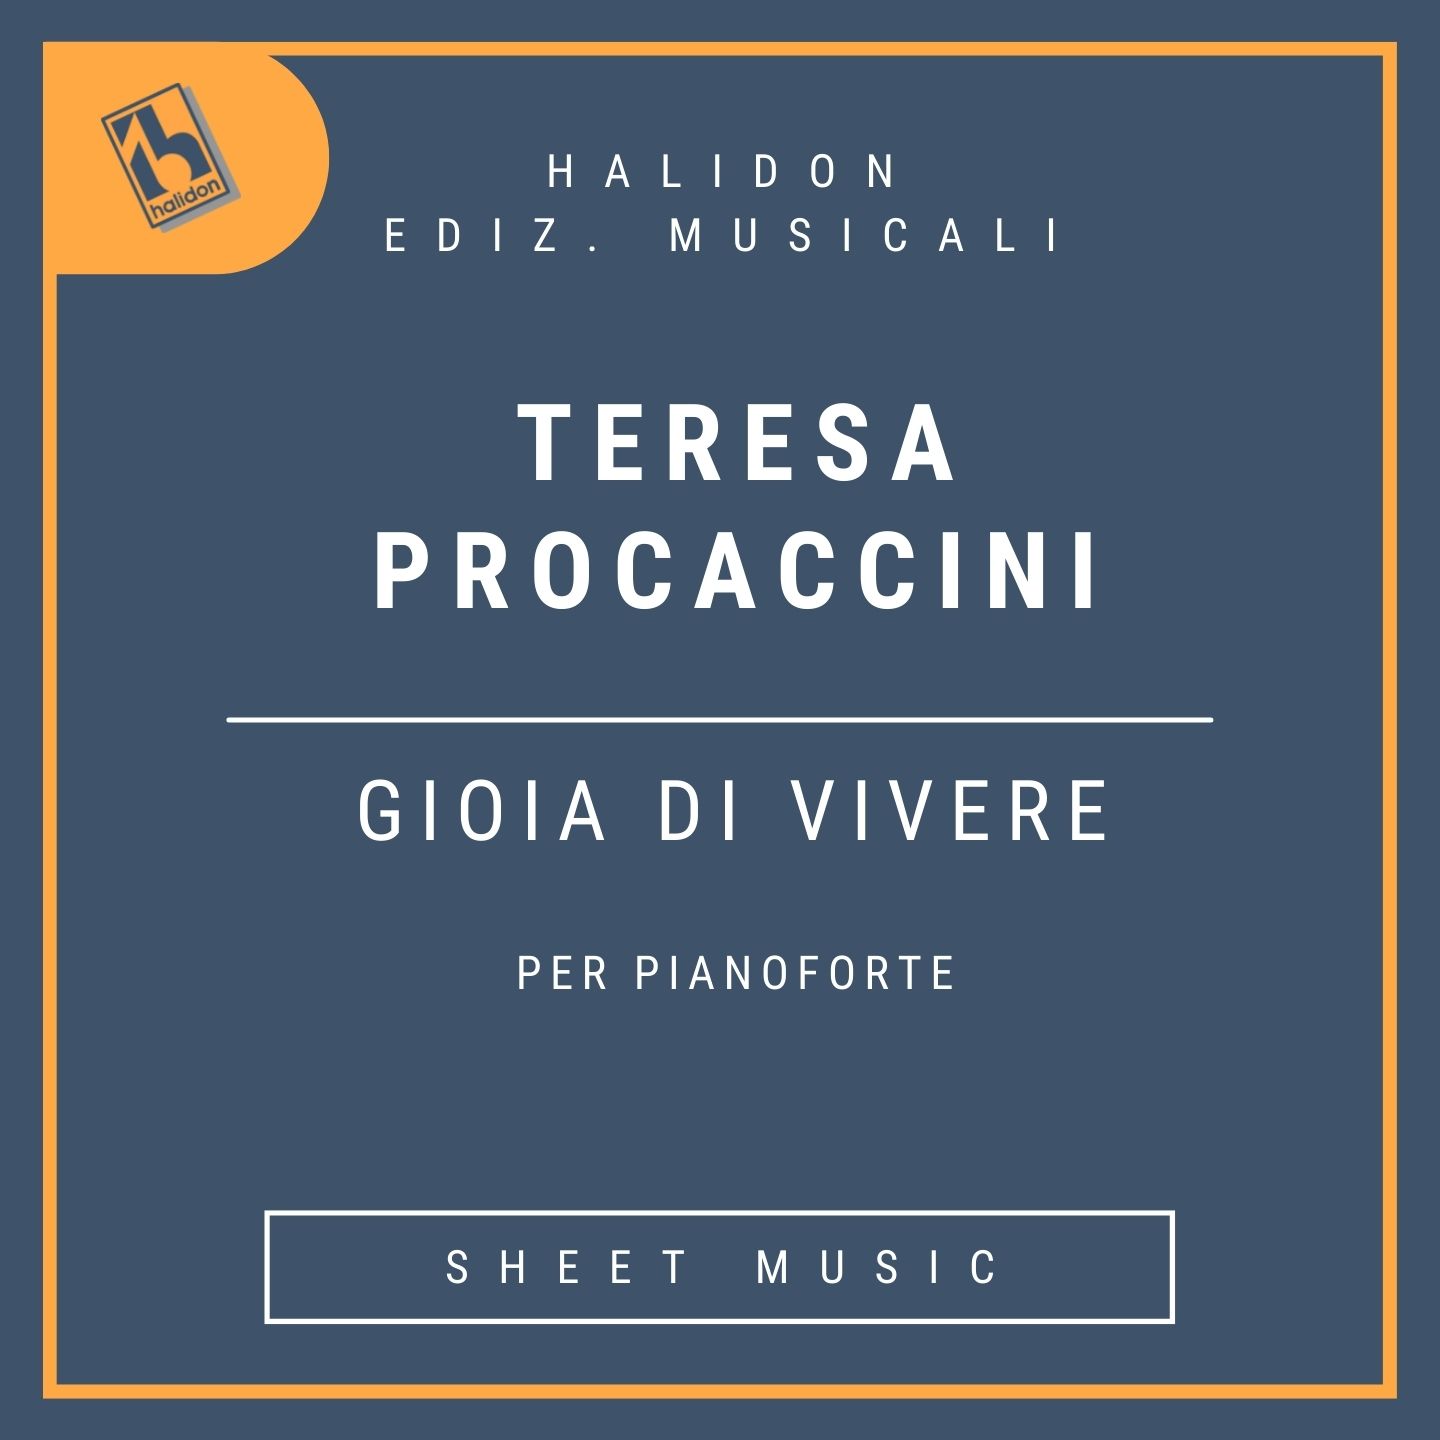 Teresa Procaccini - Gioia di vivere